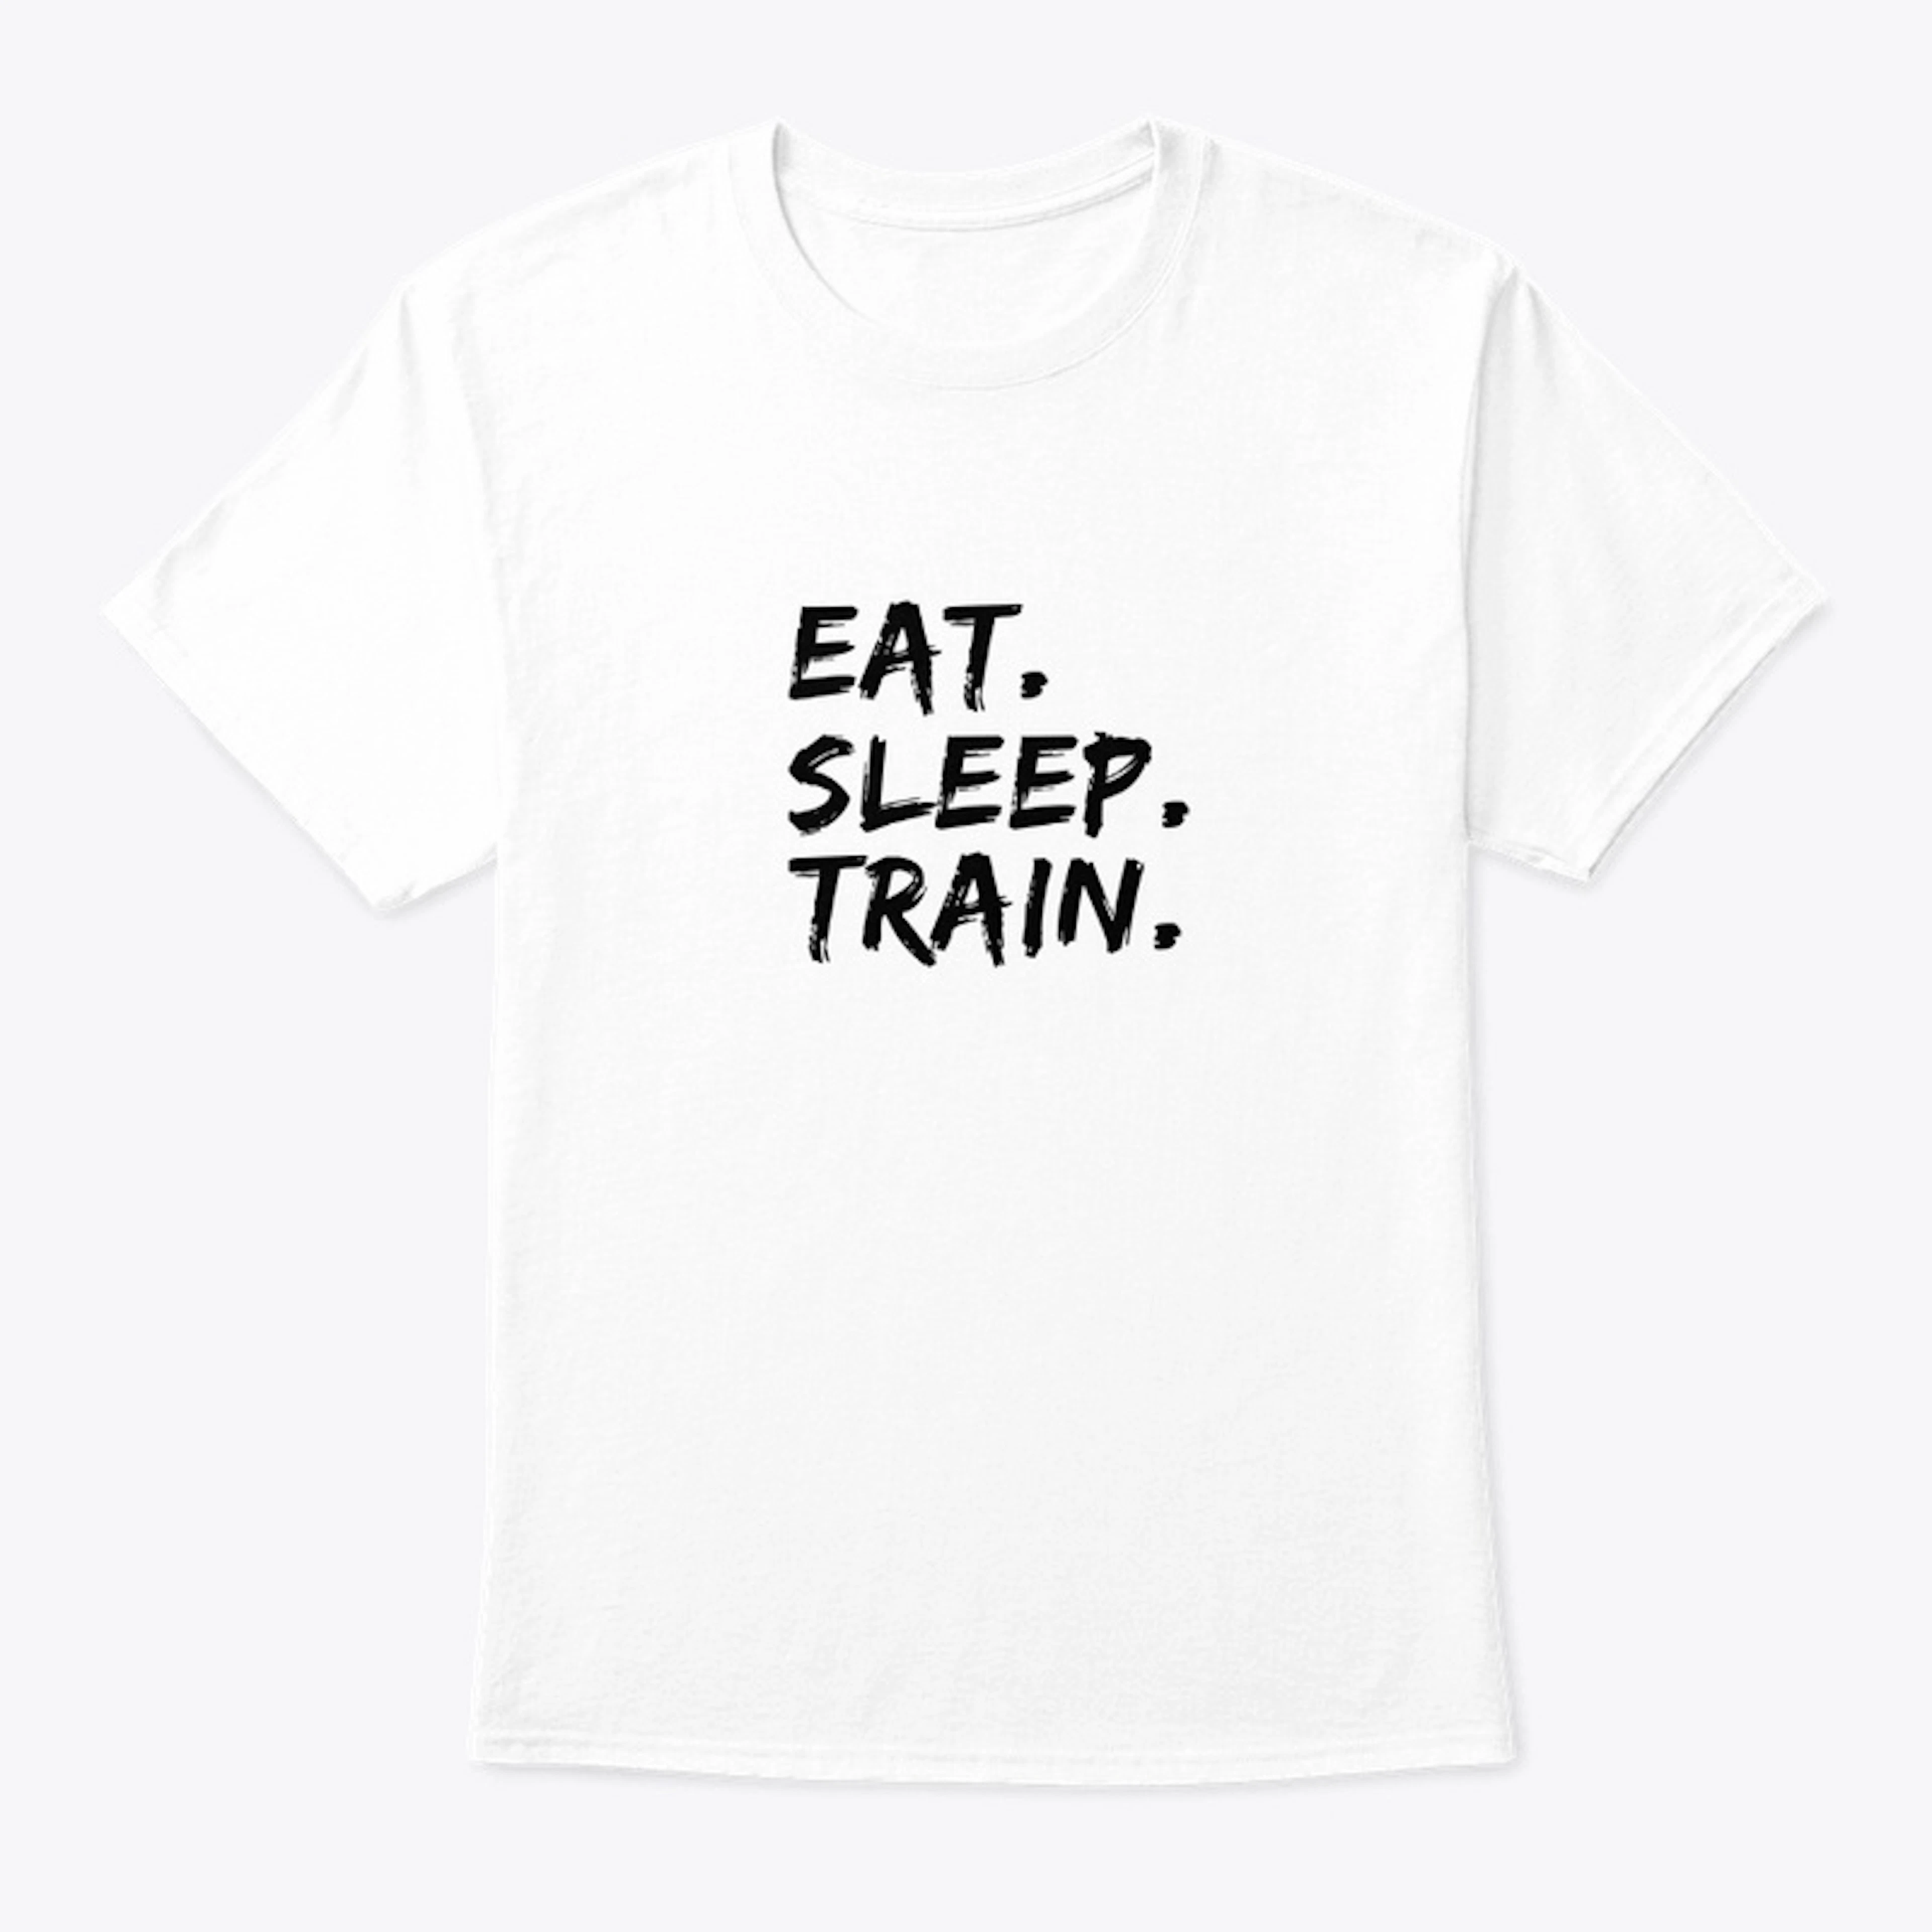 Eat. Sleep. Train.